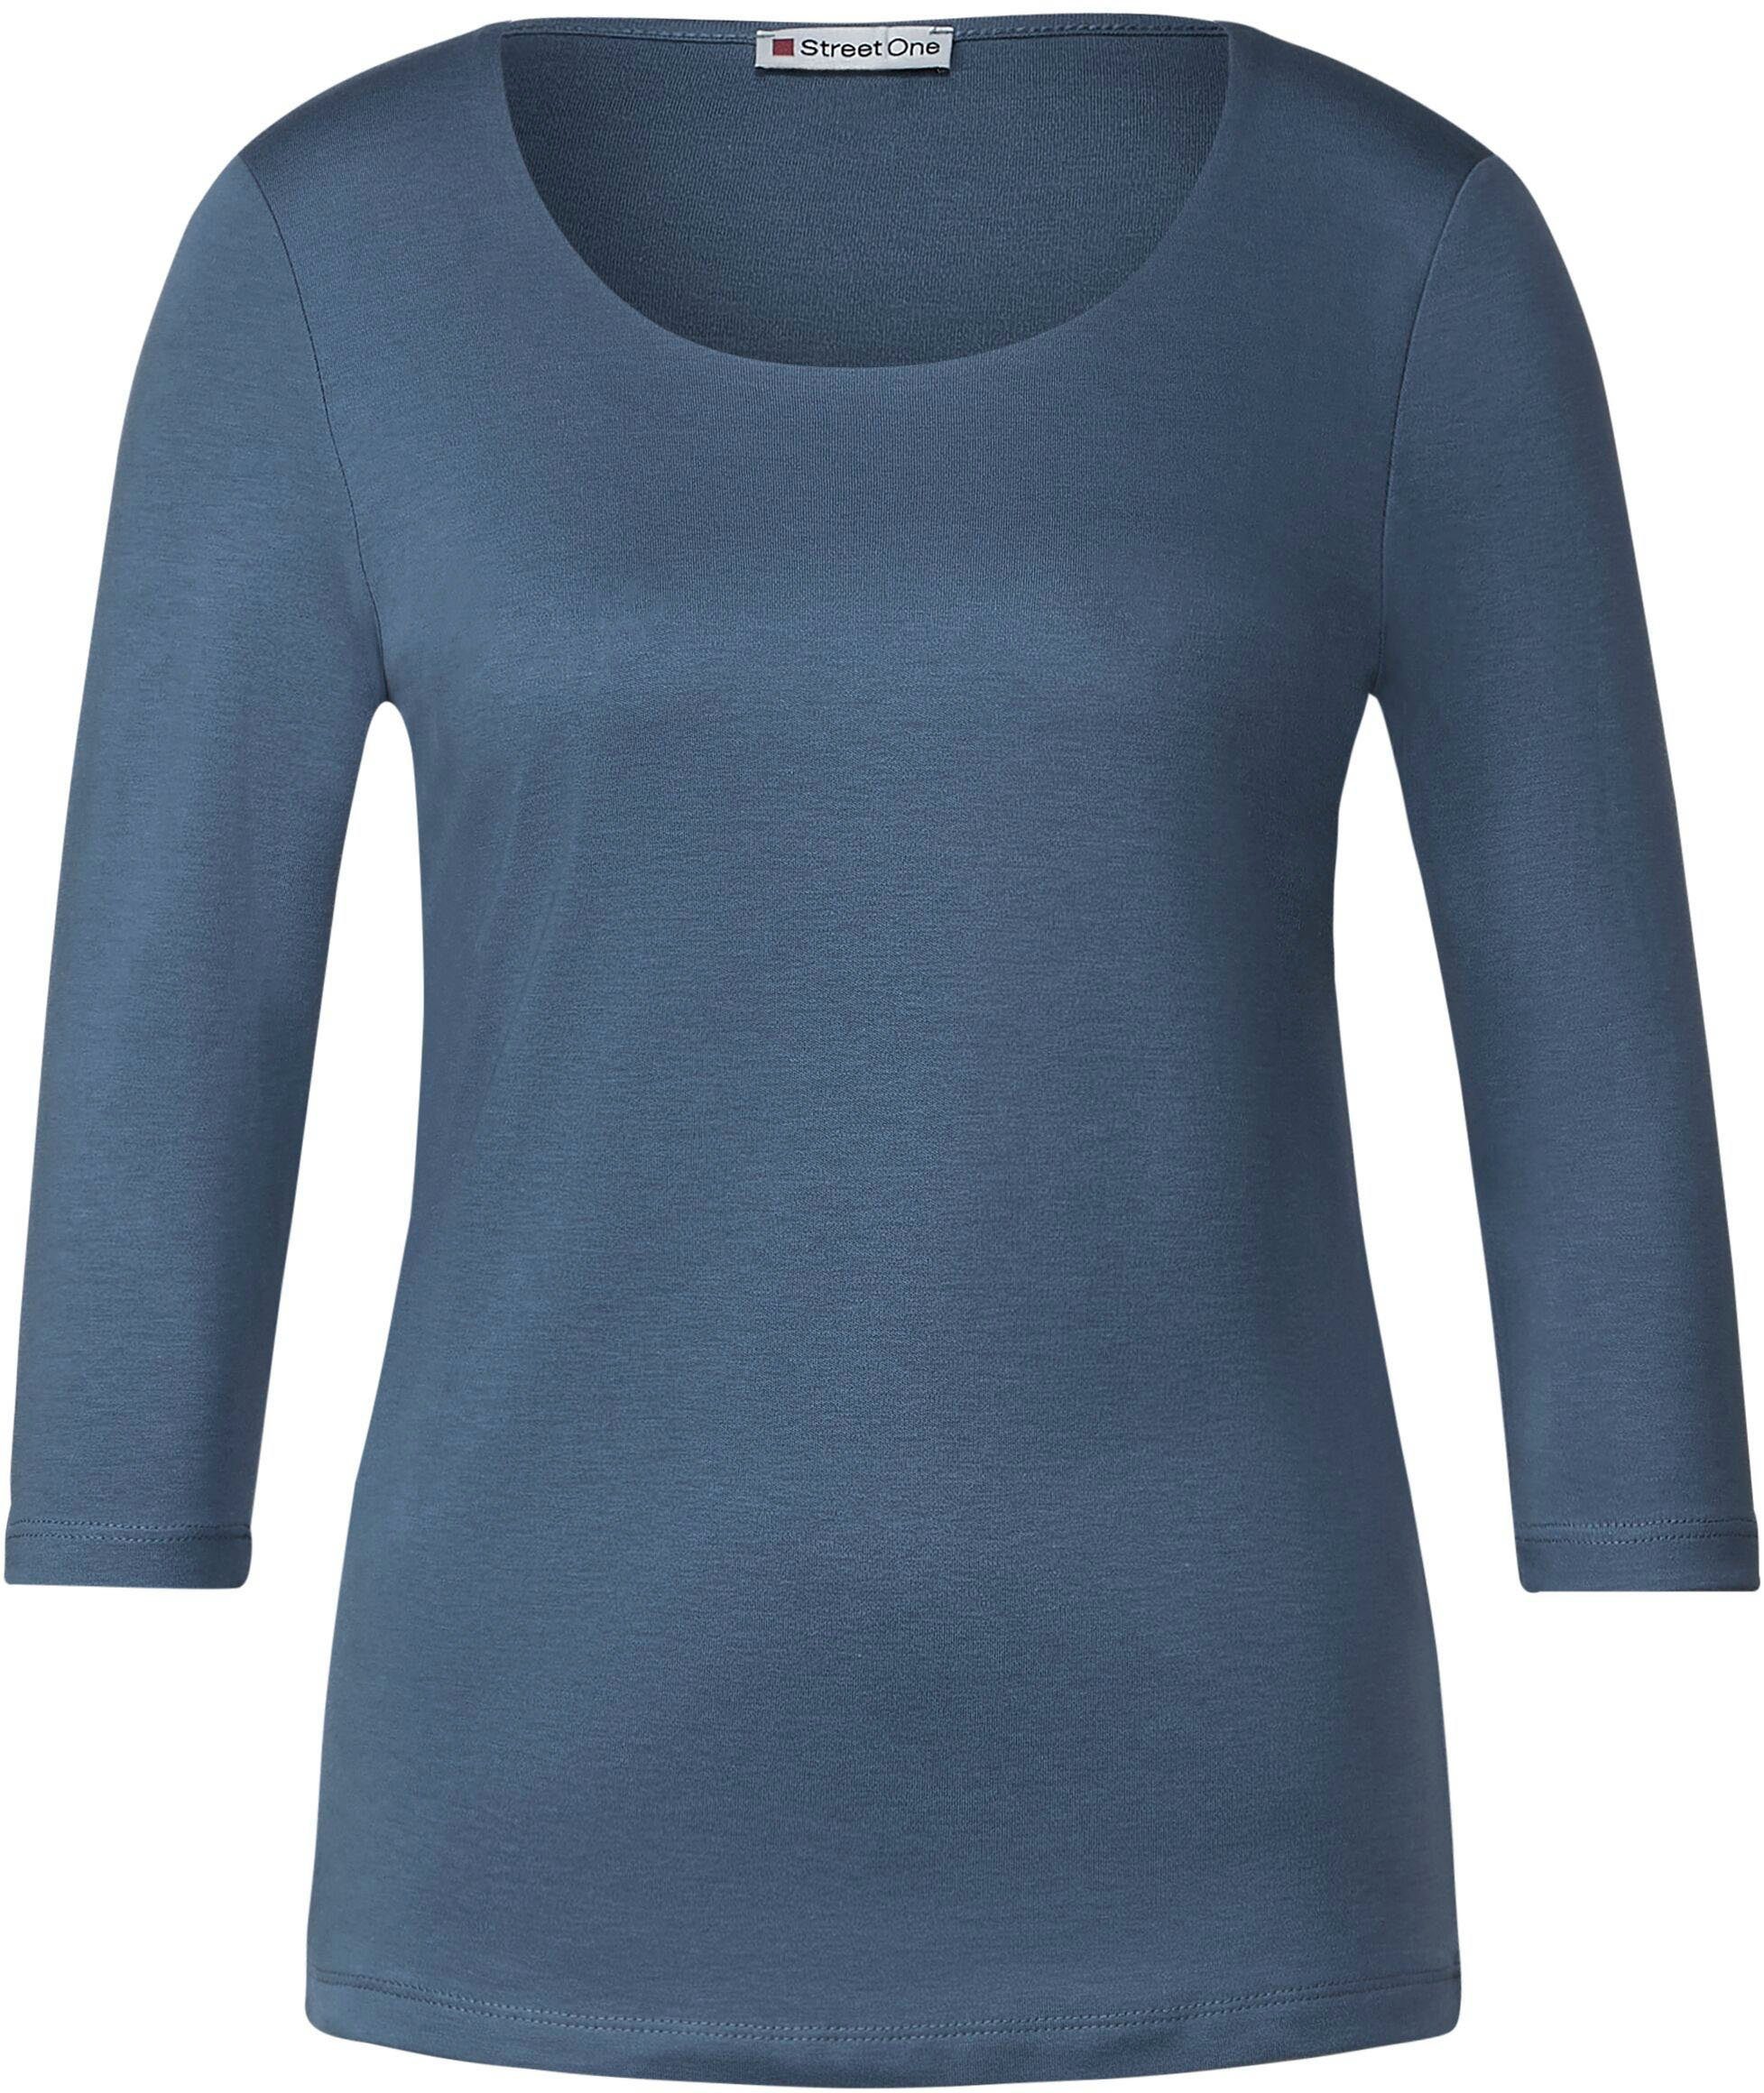 Pania Style schlichter blue STREET dark in bay Unifarbe 3/4-Arm-Shirt ONE